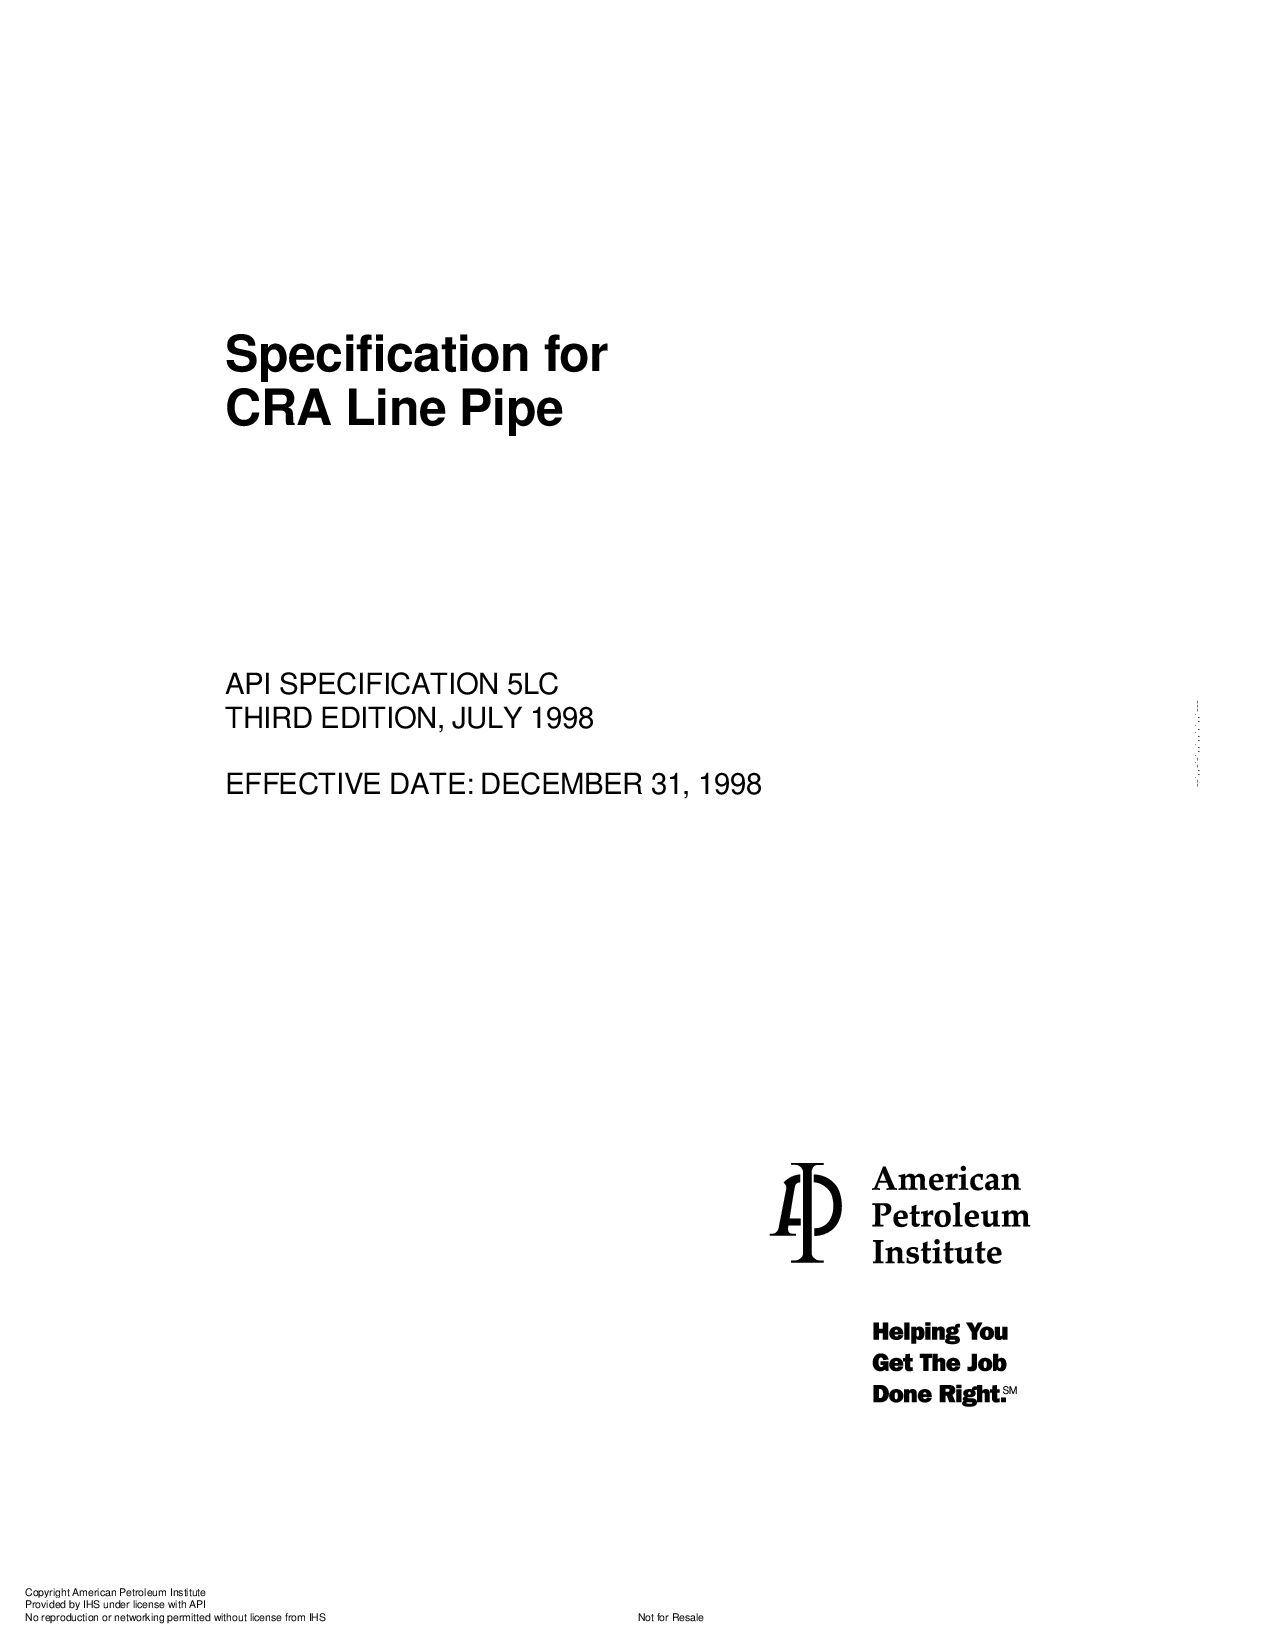 API SPEC 5LC-1998